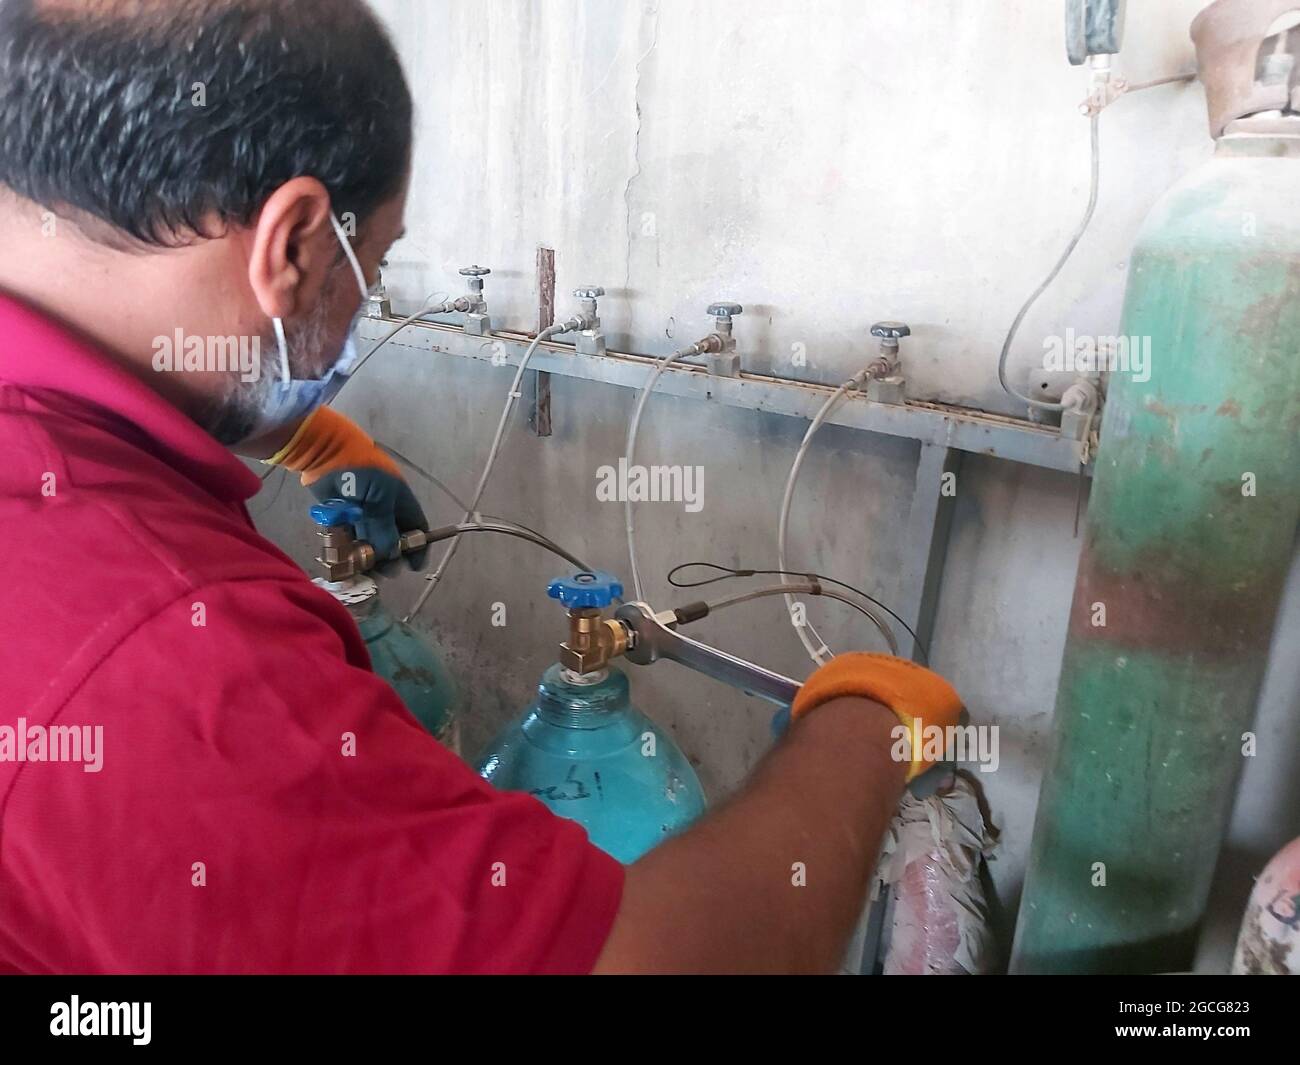 Tajura, Libye. 8 août 2021. Un travailleur remplit des bouteilles d'oxygène dans une usine d'oxygène à Tajura, en Libye, le 8 août 2021. Le Ministère libyen de la santé a fourni de l'oxygène à certains hôpitaux de la capitale Tripoli. Les principaux hôpitaux de la ville ont récemment souffert d'un grave manque d'oxygène, car le pays continue d'enregistrer de nouveaux cas de COVID-19. Credit: Hamza Turkia/Xinhua/Alay Live News Banque D'Images